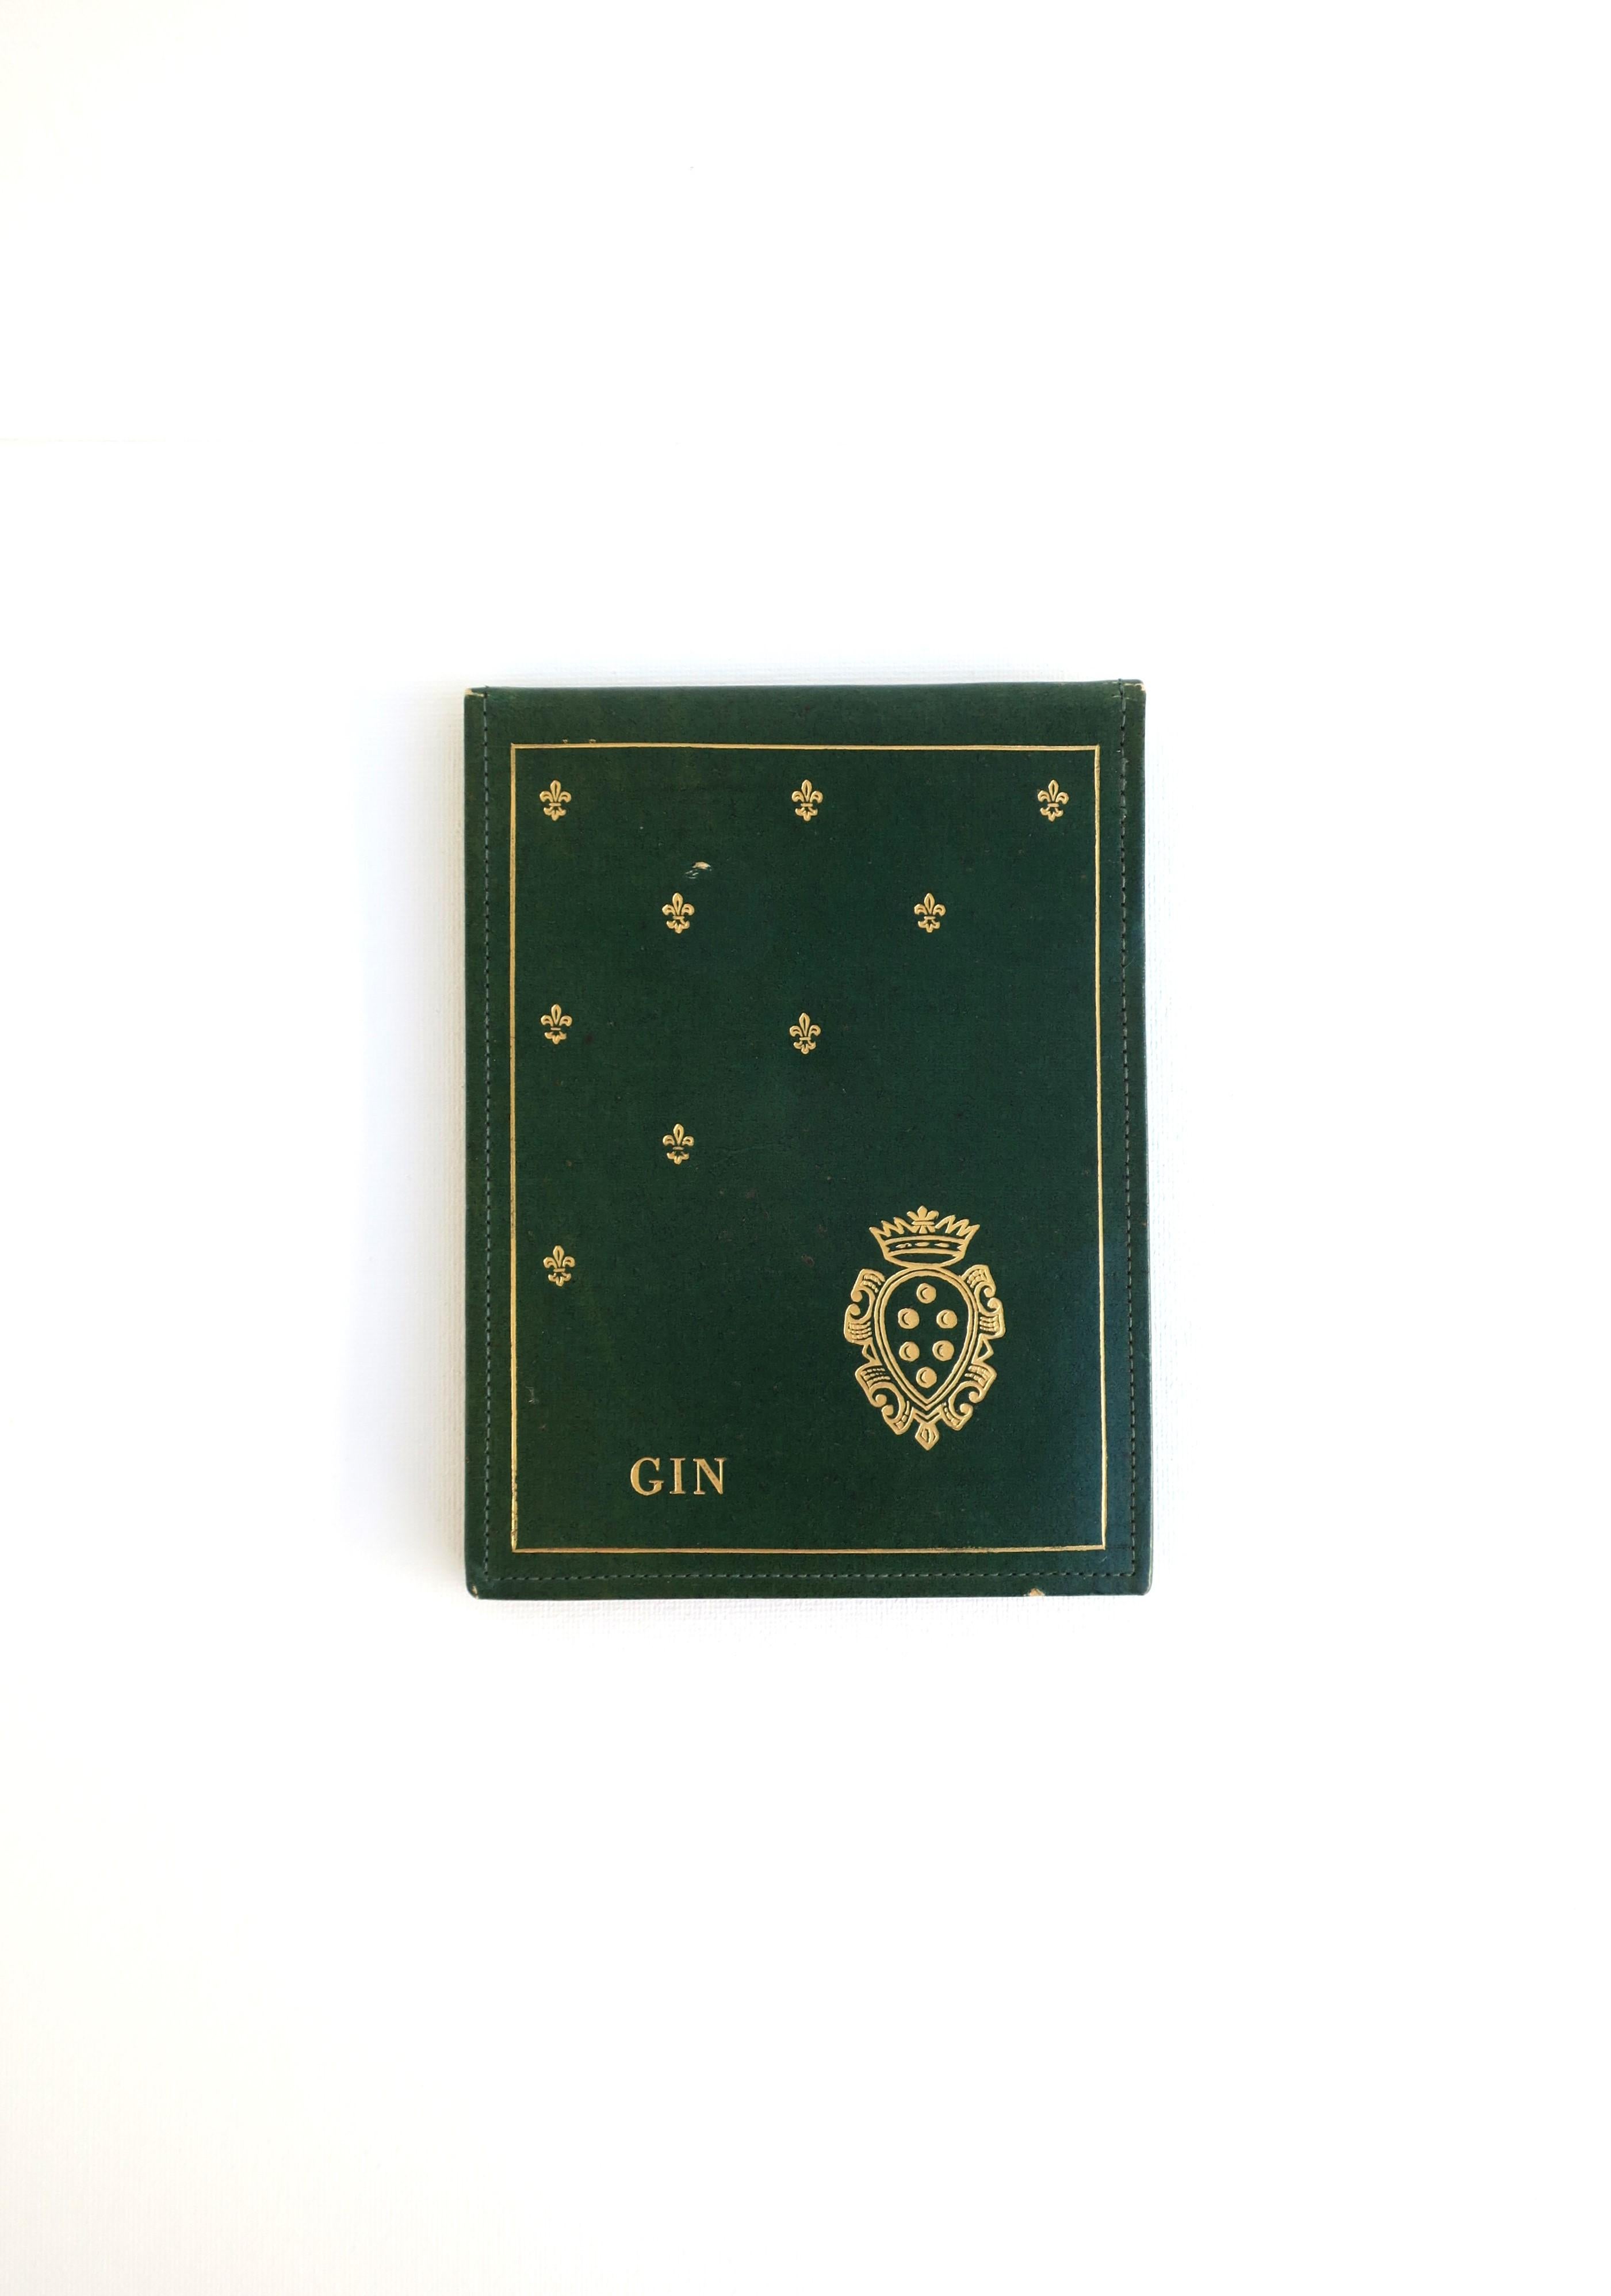 Pad italien vert et or pour le jeu de cartes Gin, vers le début ou le milieu du 20e siècle, Italie. La pièce est en similicuir avec un gaufrage doré : 